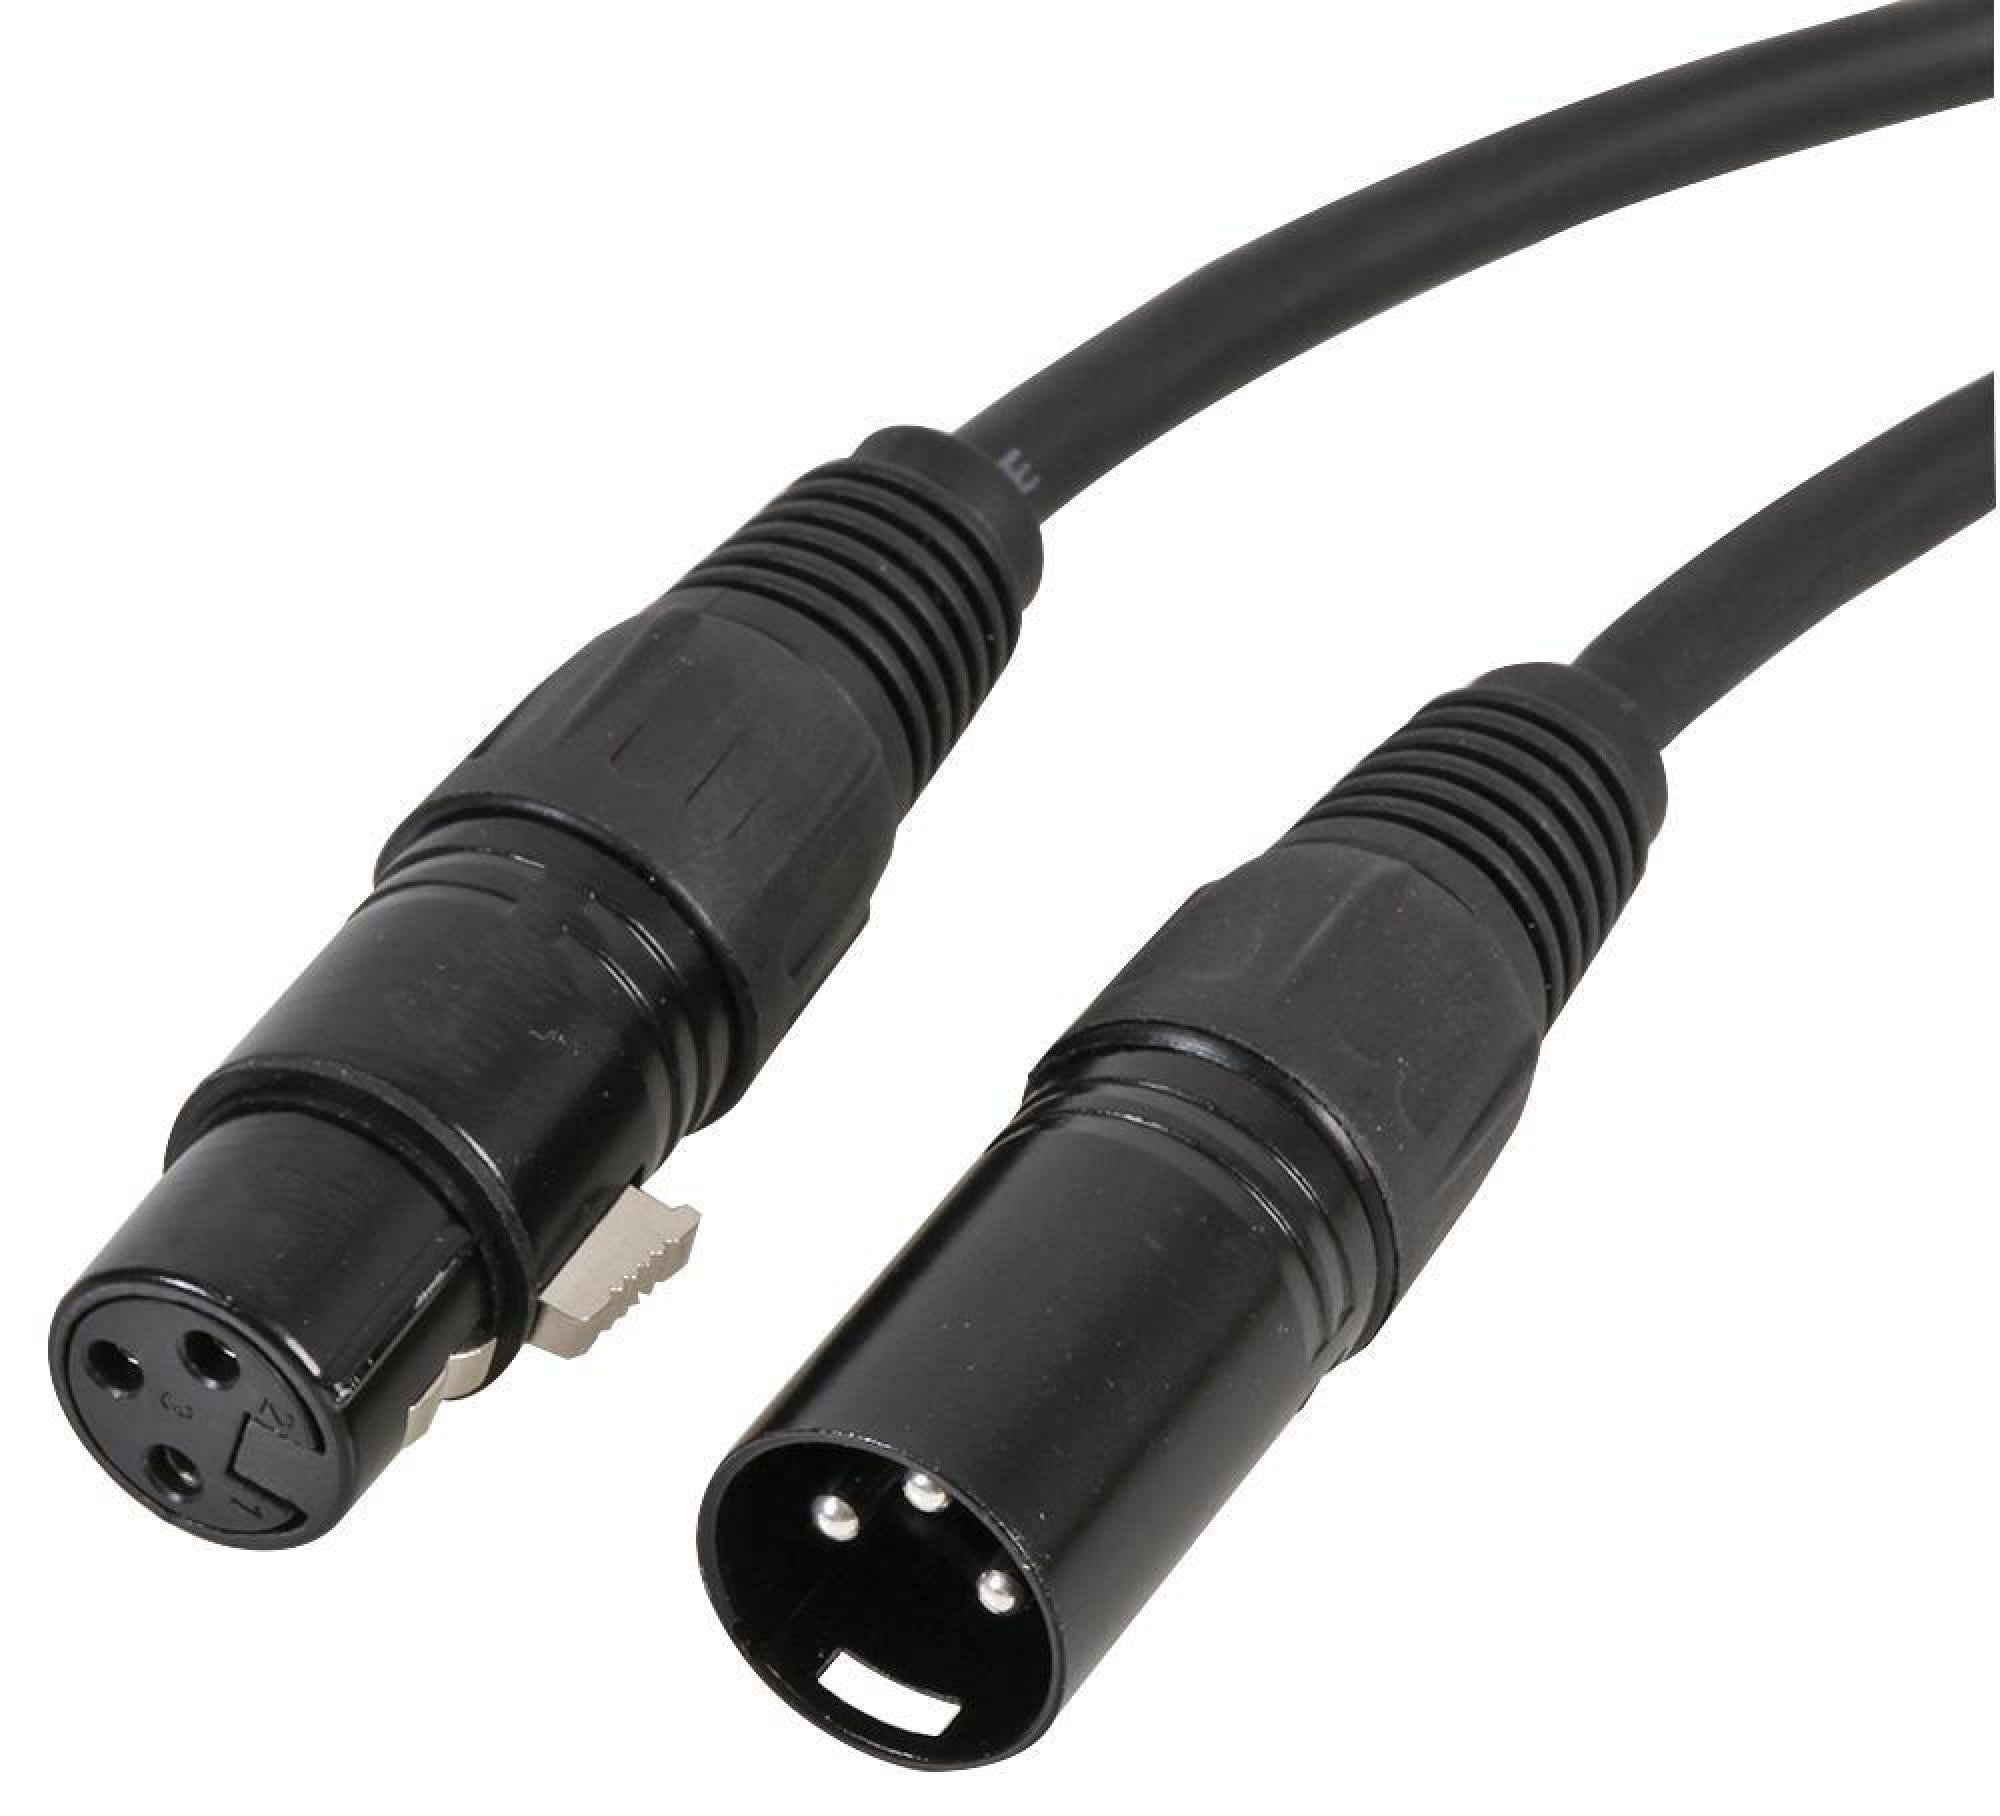 PULSE Microphone Cable 3M XLR/XLR